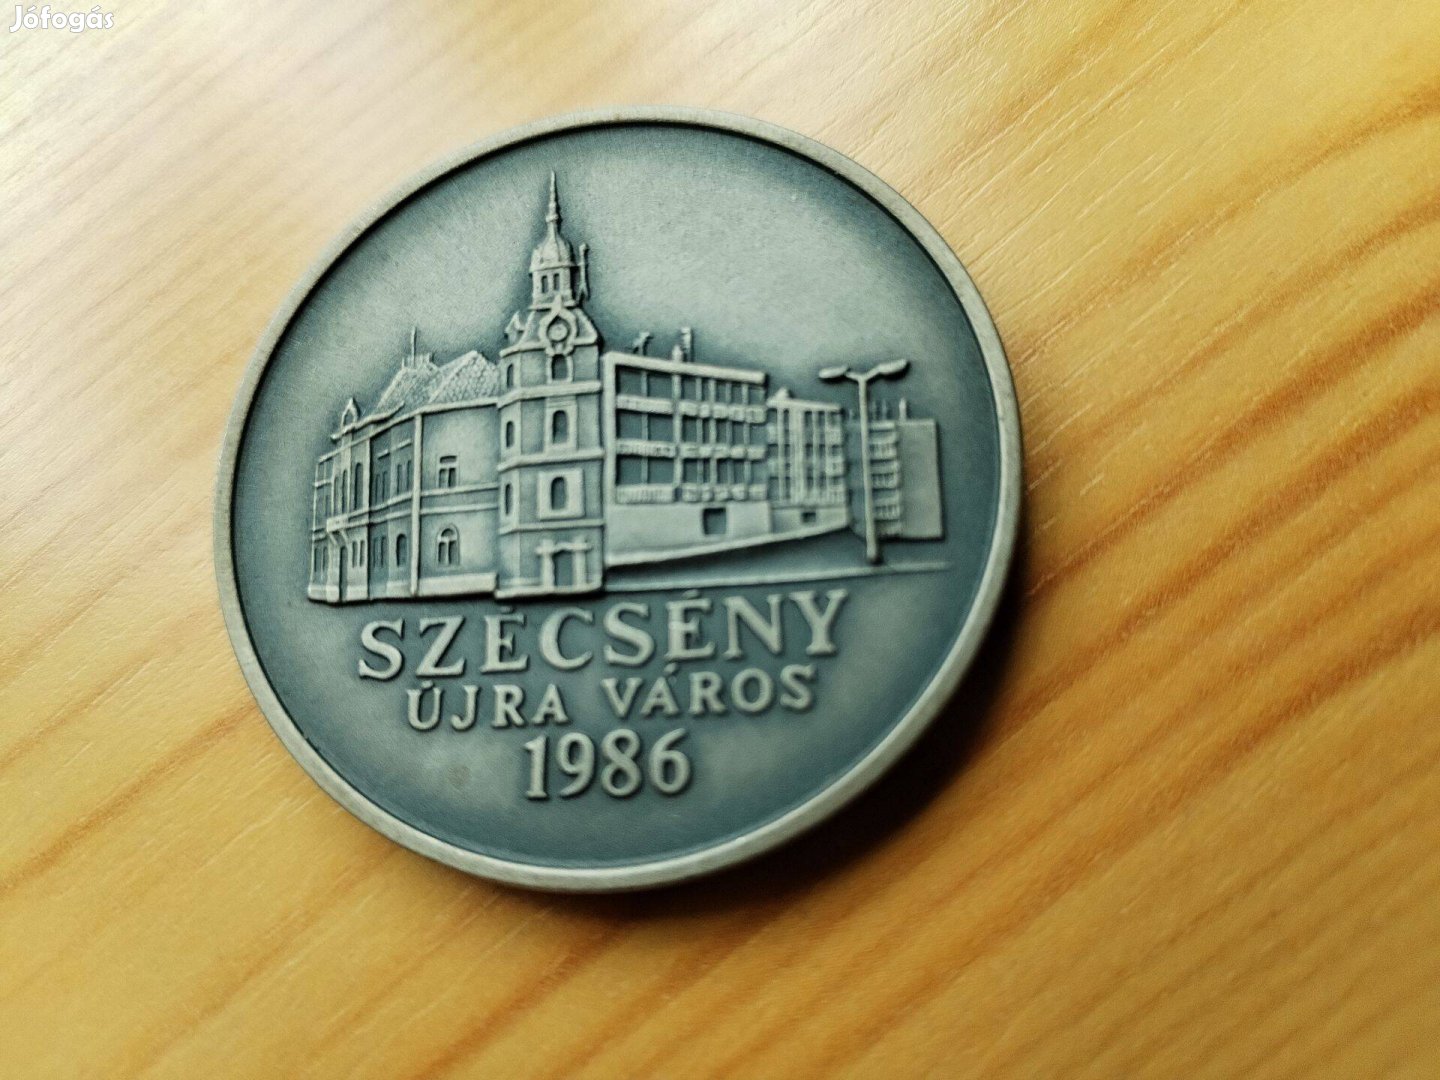 Szécsény Újra Város 1986 ezüstpatinázott emlékérem